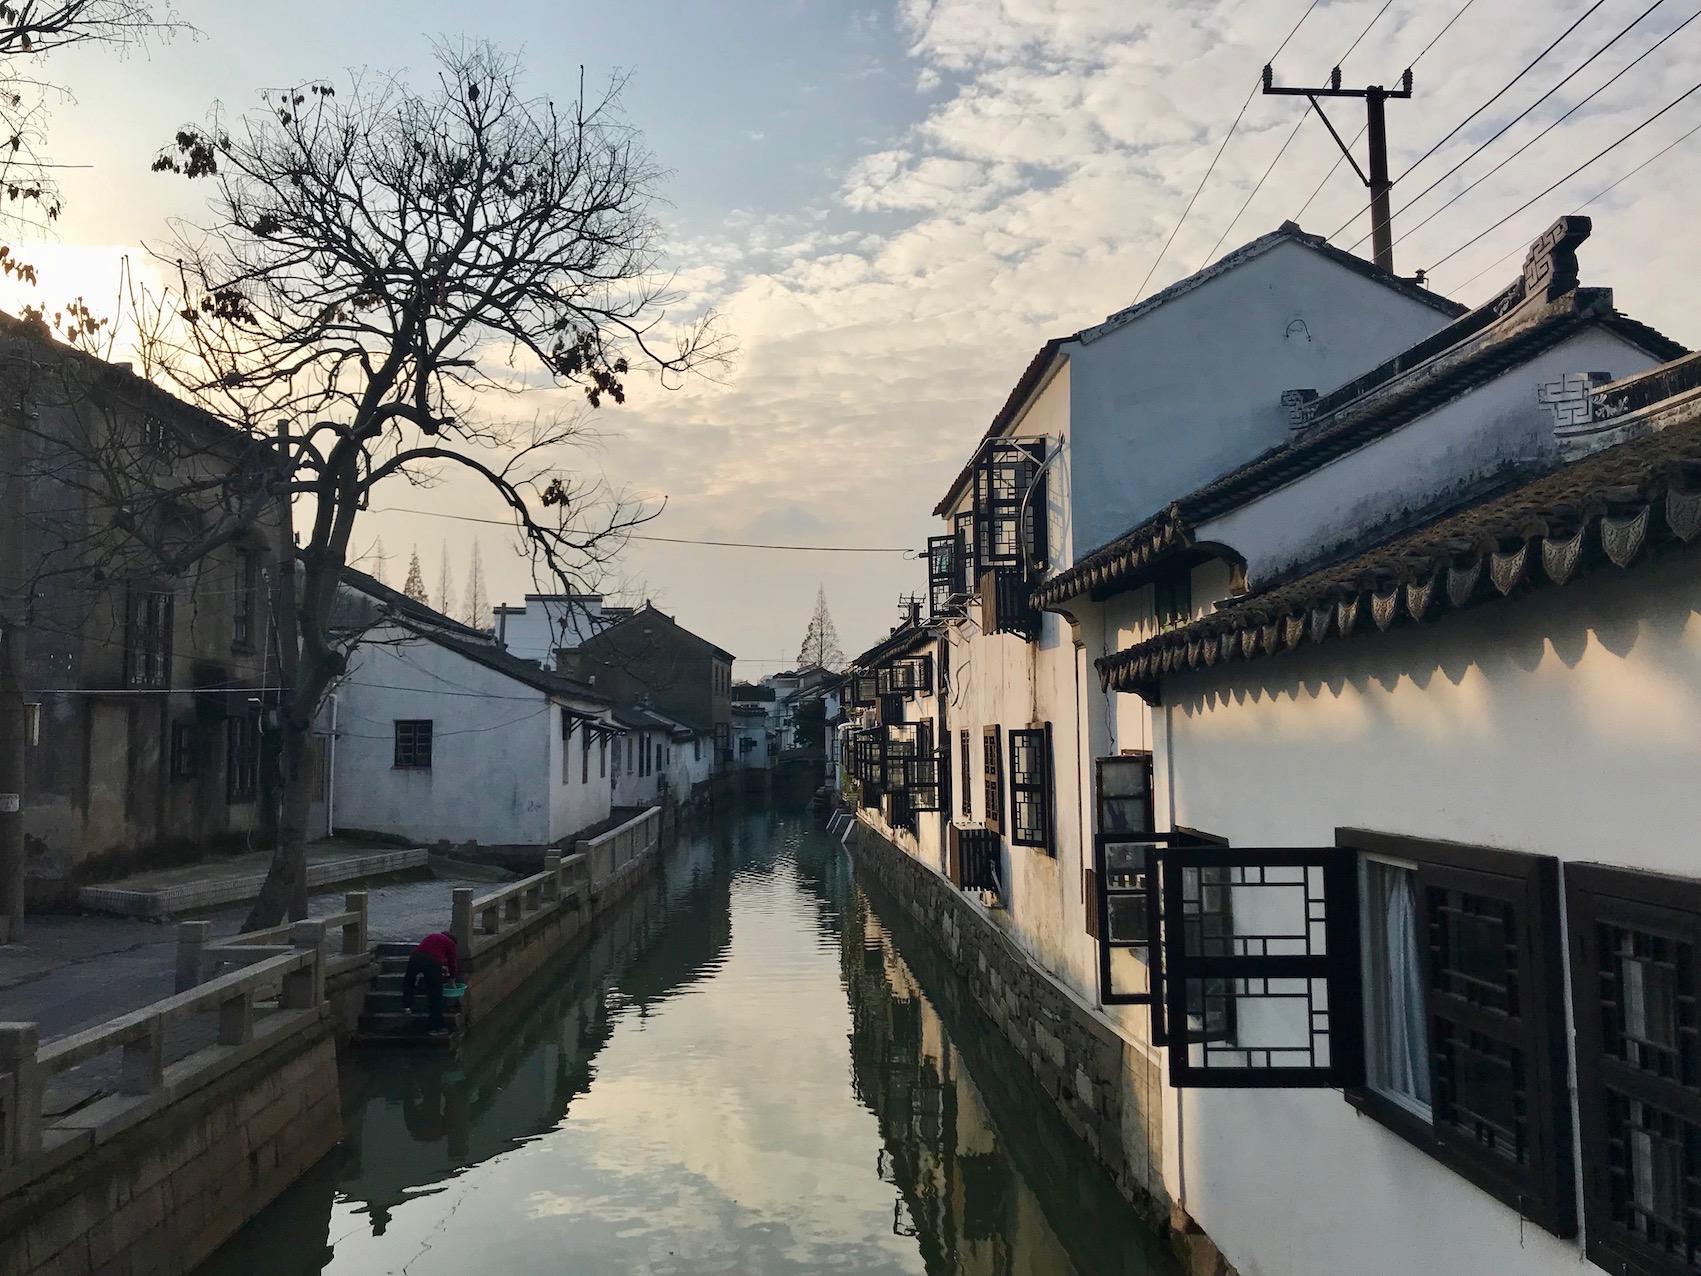 Residential canal street near Pingjiang Road Suzhou China